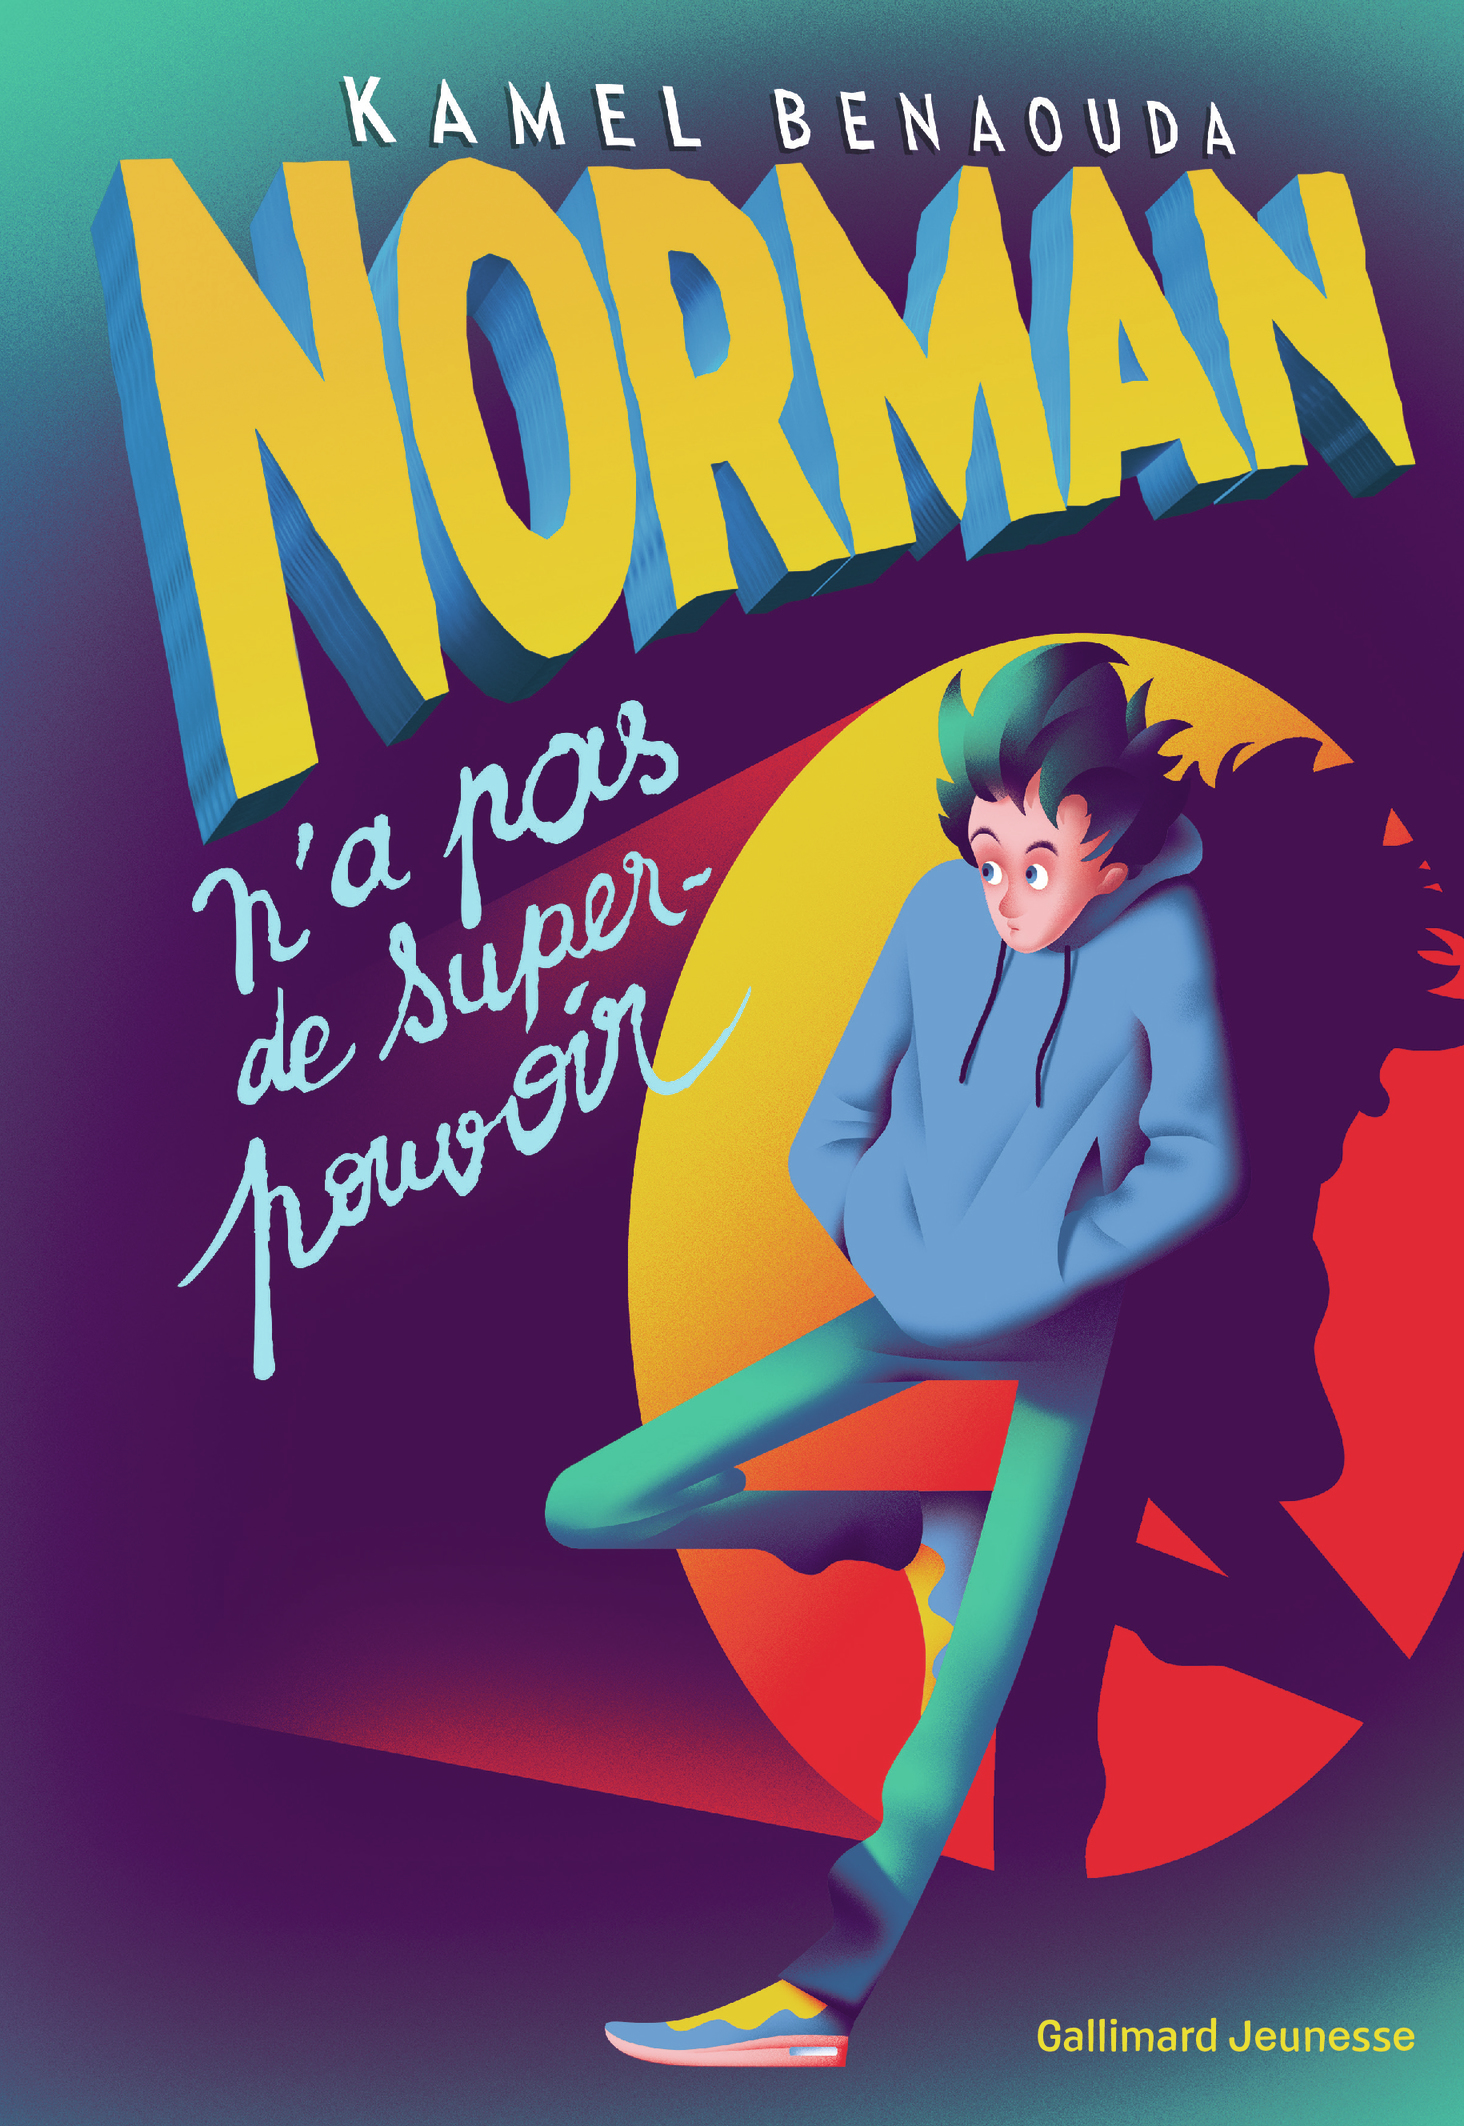 Afficher "Norman n'a pas de super-pouvoir"